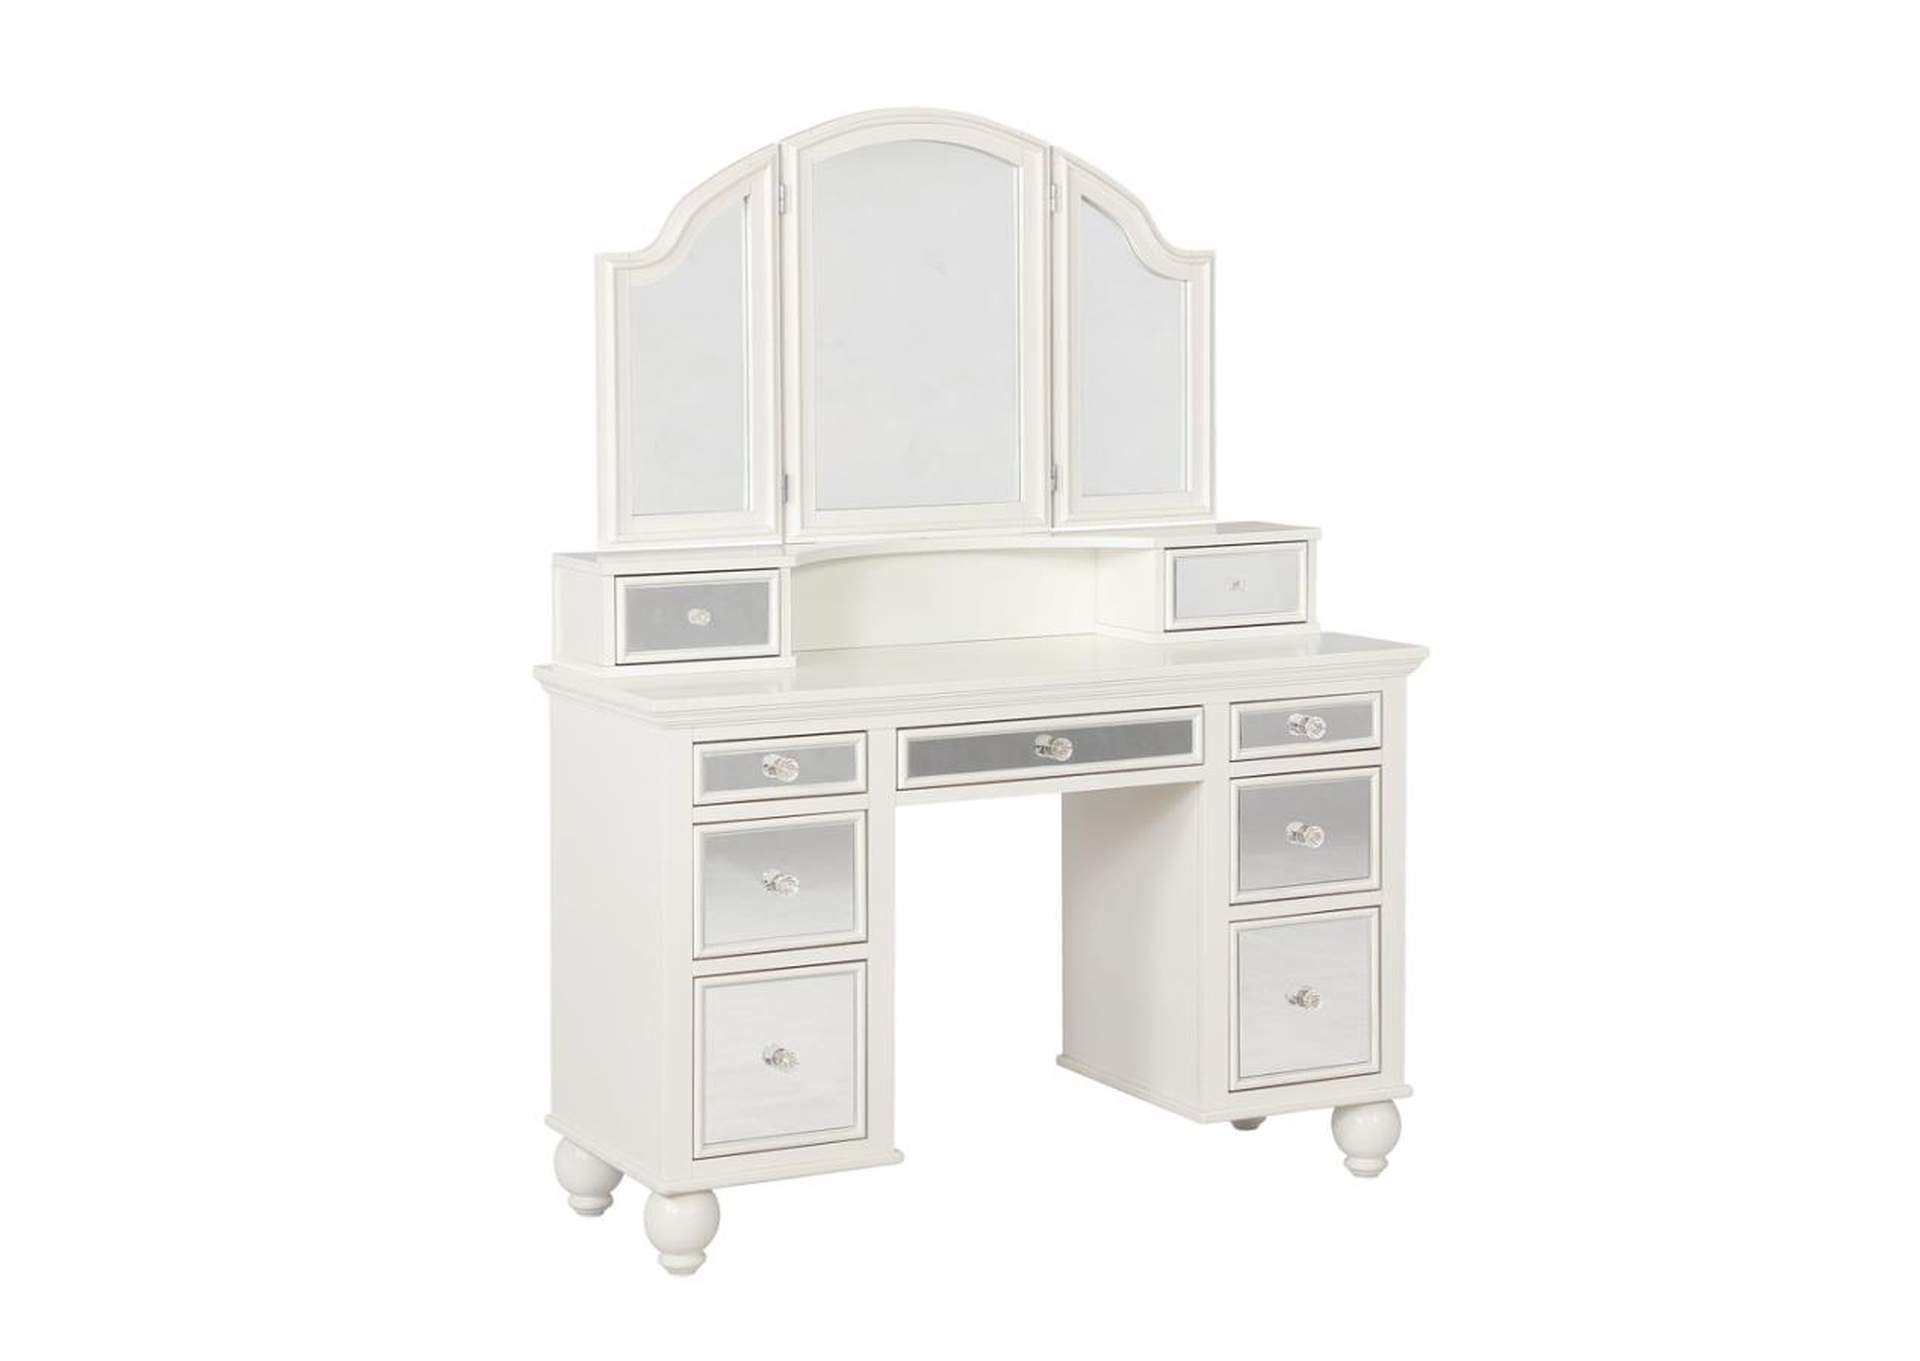 Reinhart 2-Piece Vanity Set White And Beige,Coaster Furniture